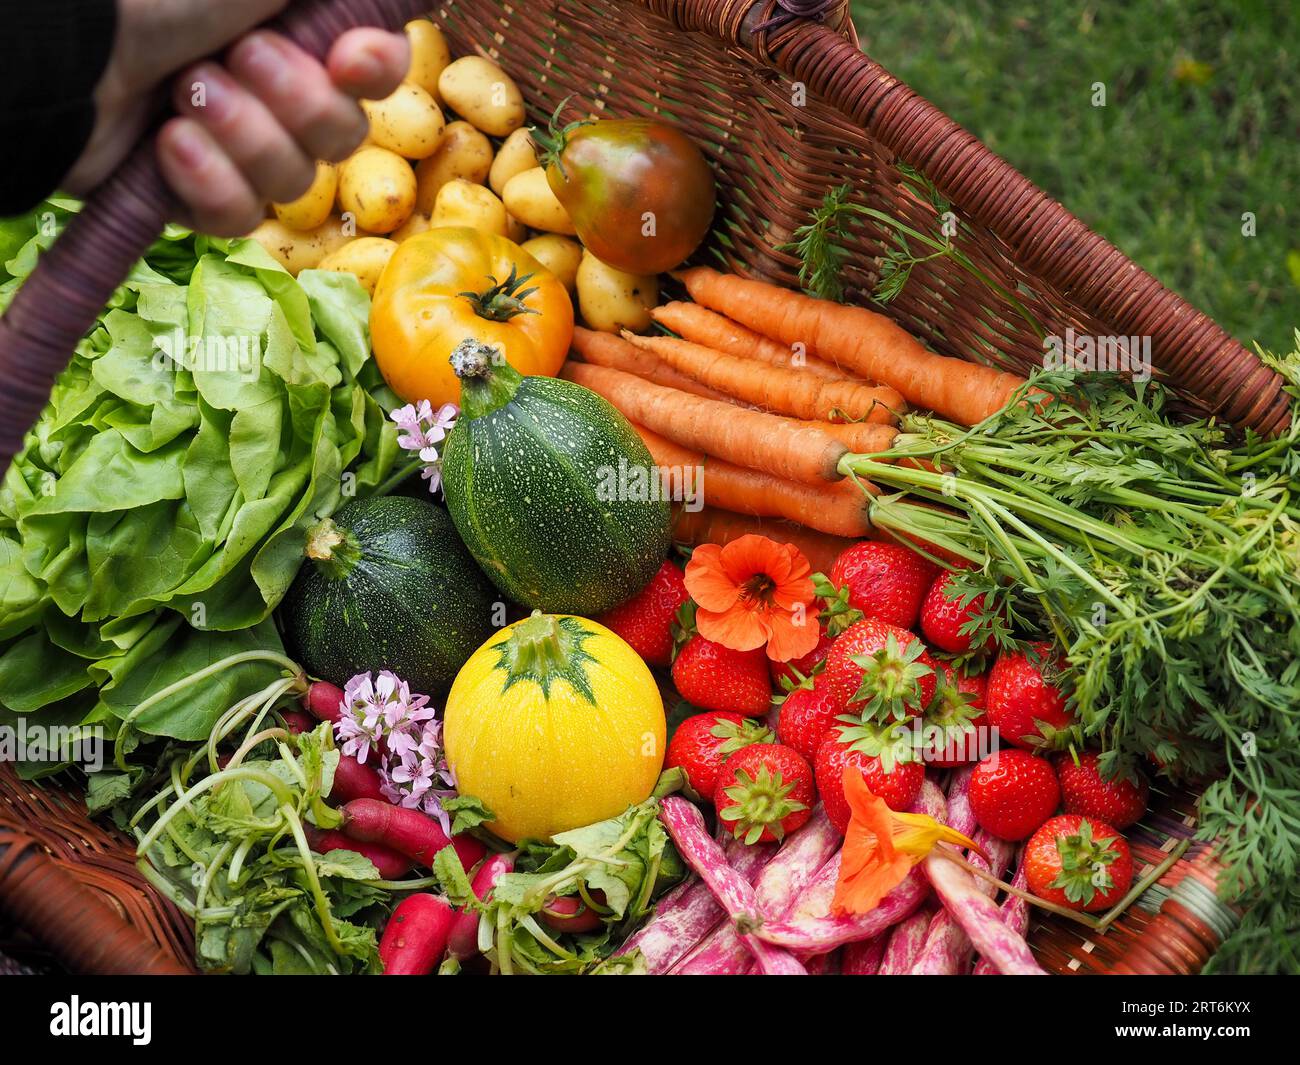 Un panier de fruits et légumes colorés fraîchement récoltés du jardin ou de la parcelle, y compris des haricots, des carottes, de la laitue et des courgettes Banque D'Images